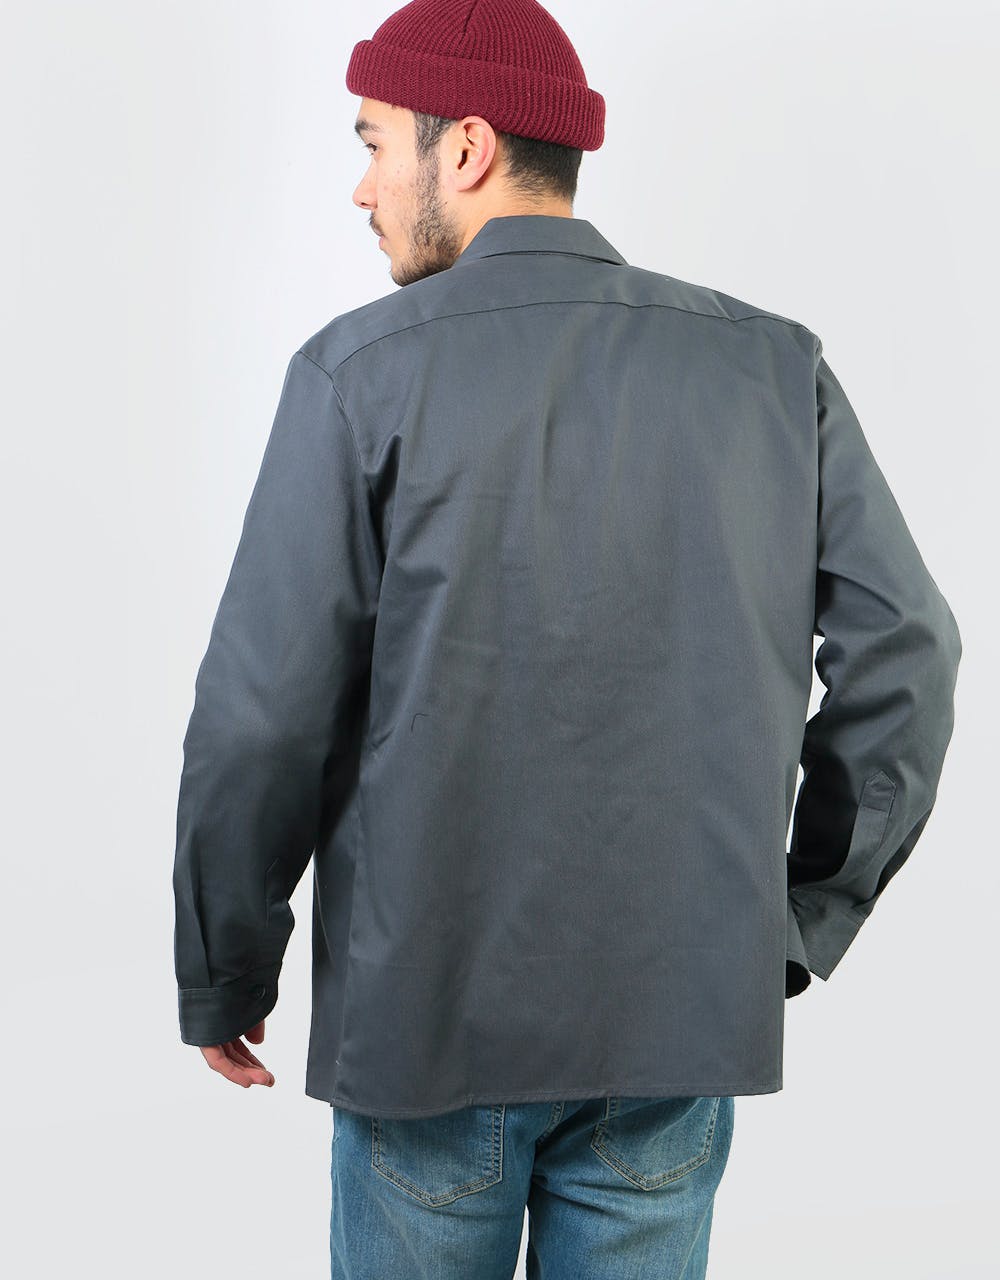 Dickies L/S Slim Shirt - Charcoal Grey